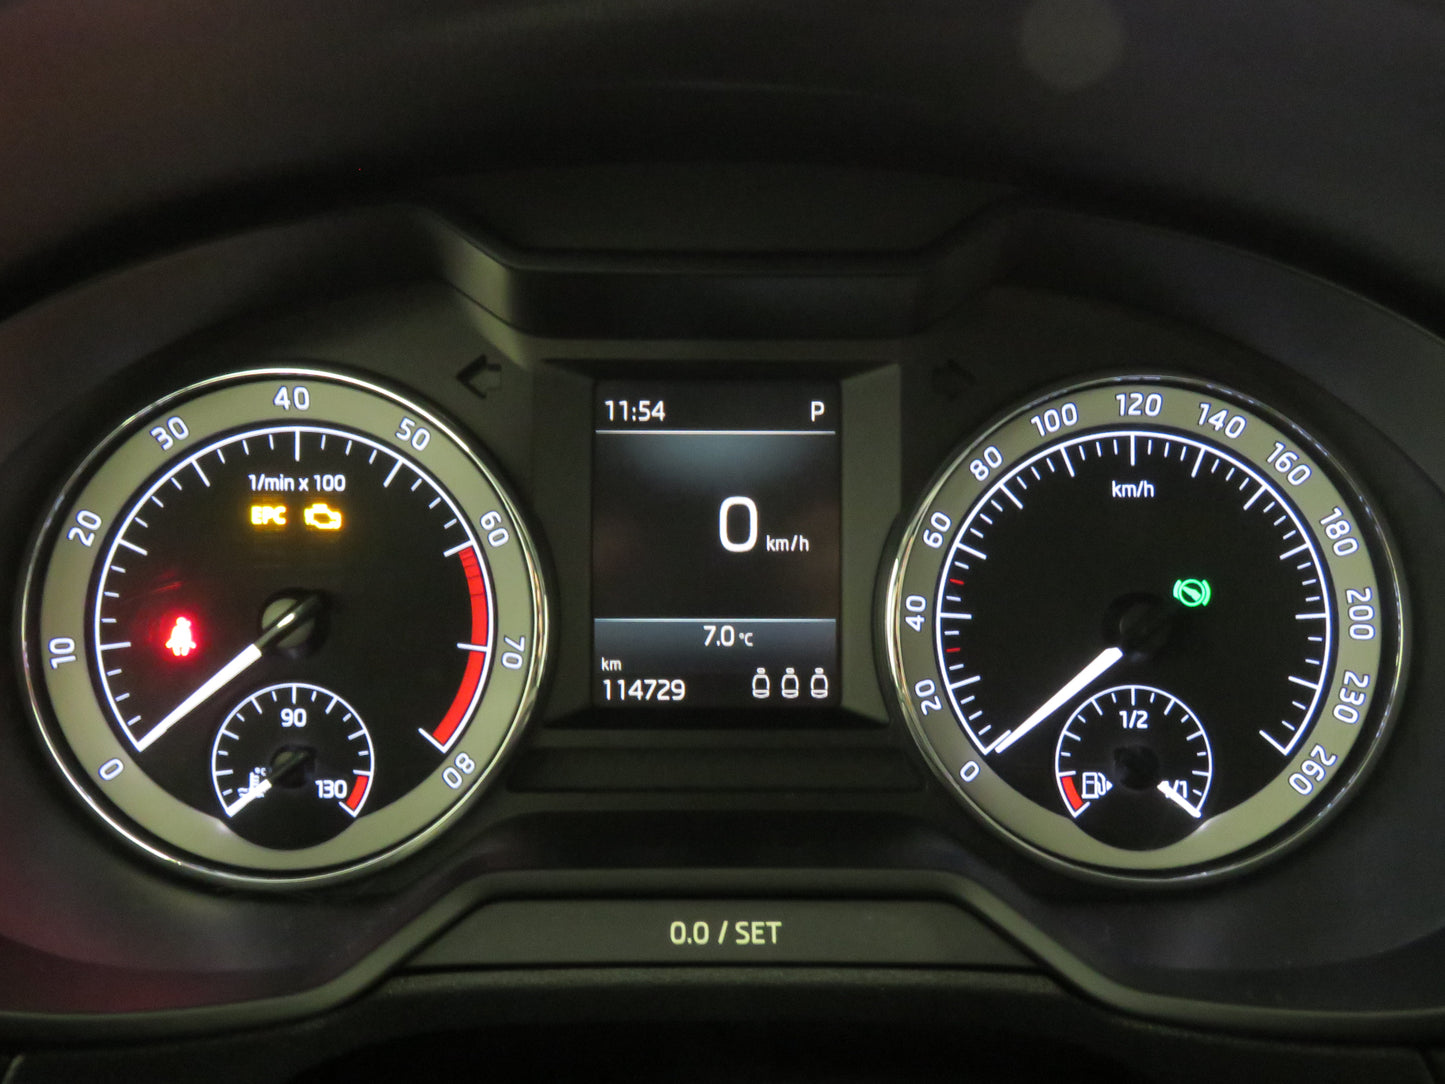 Škoda Octavia 1.5 TSI Style Plus